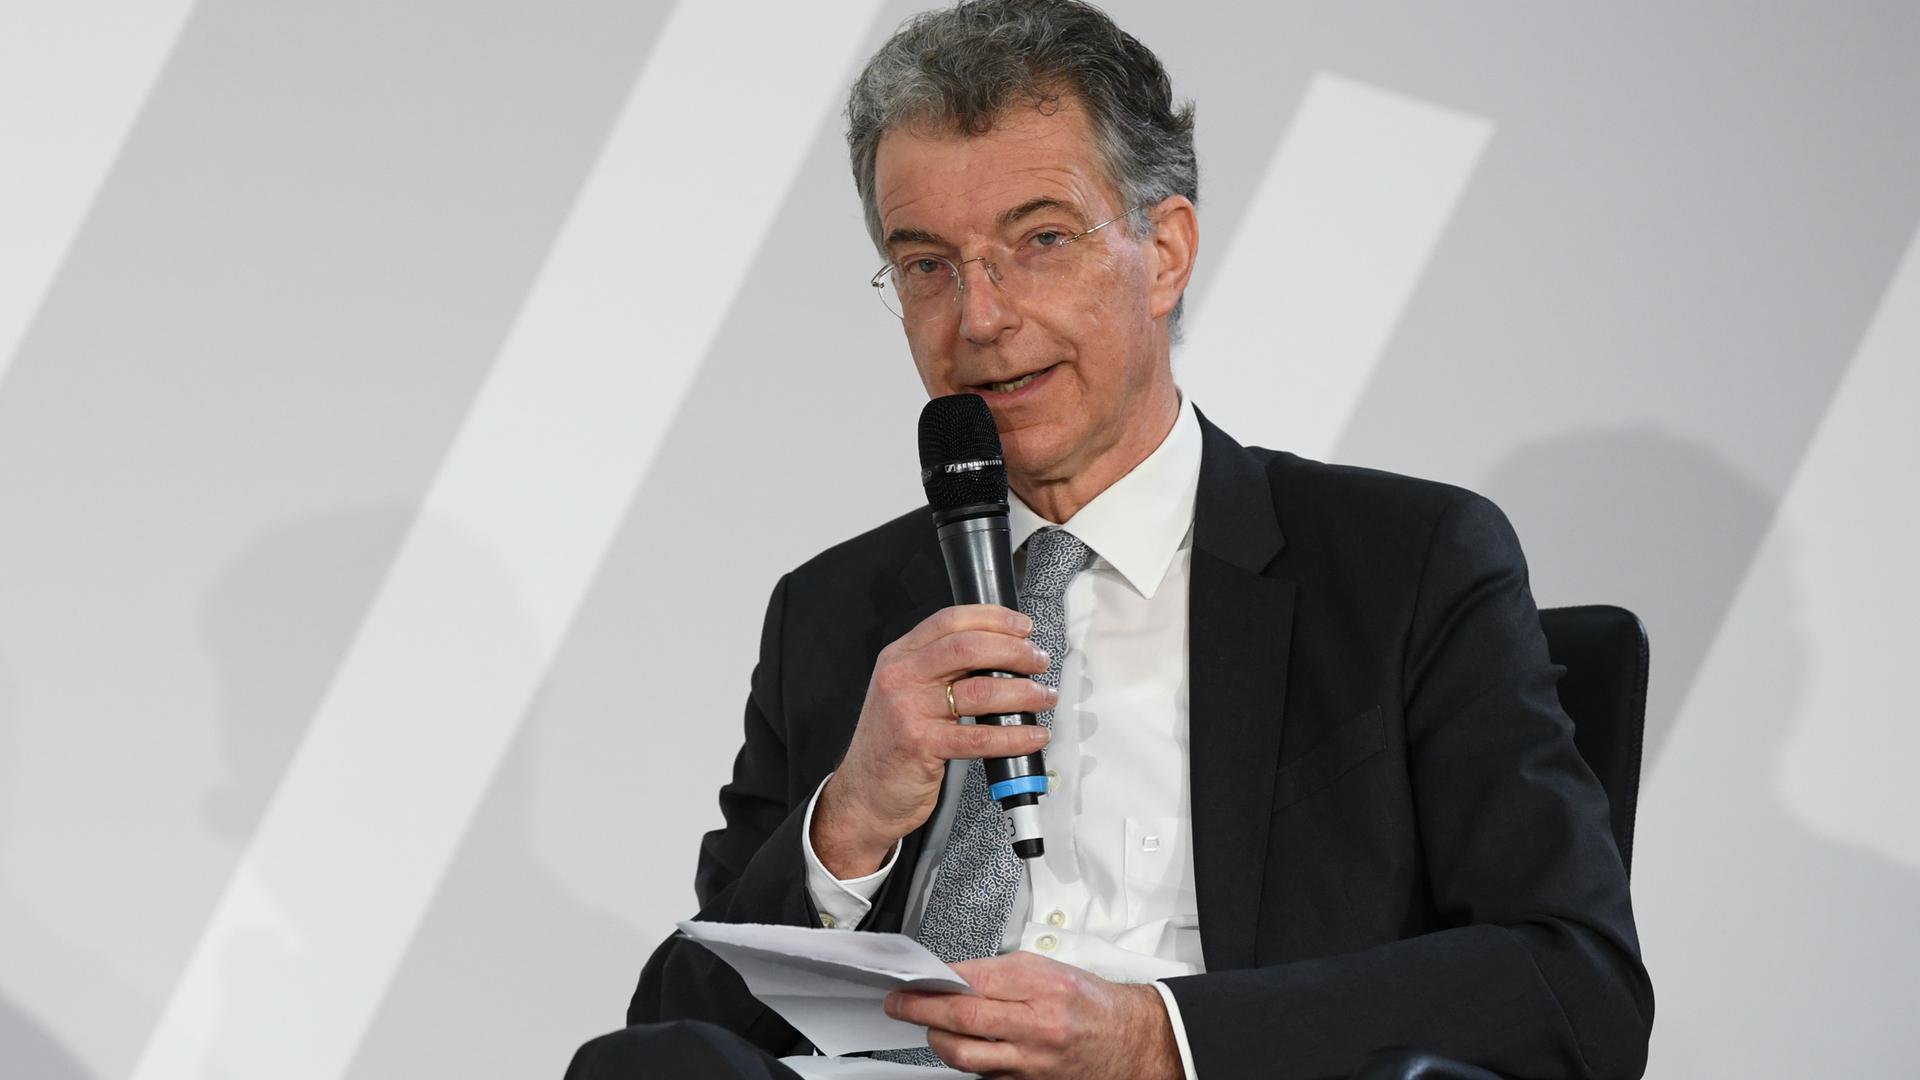 ADer Vorsitzende der Münchner Sicherheitskonferenz, Christoph Heusgen, sitzt in einer Podiumsdiskussion in Berlin und spricht in ein Mikrofon.